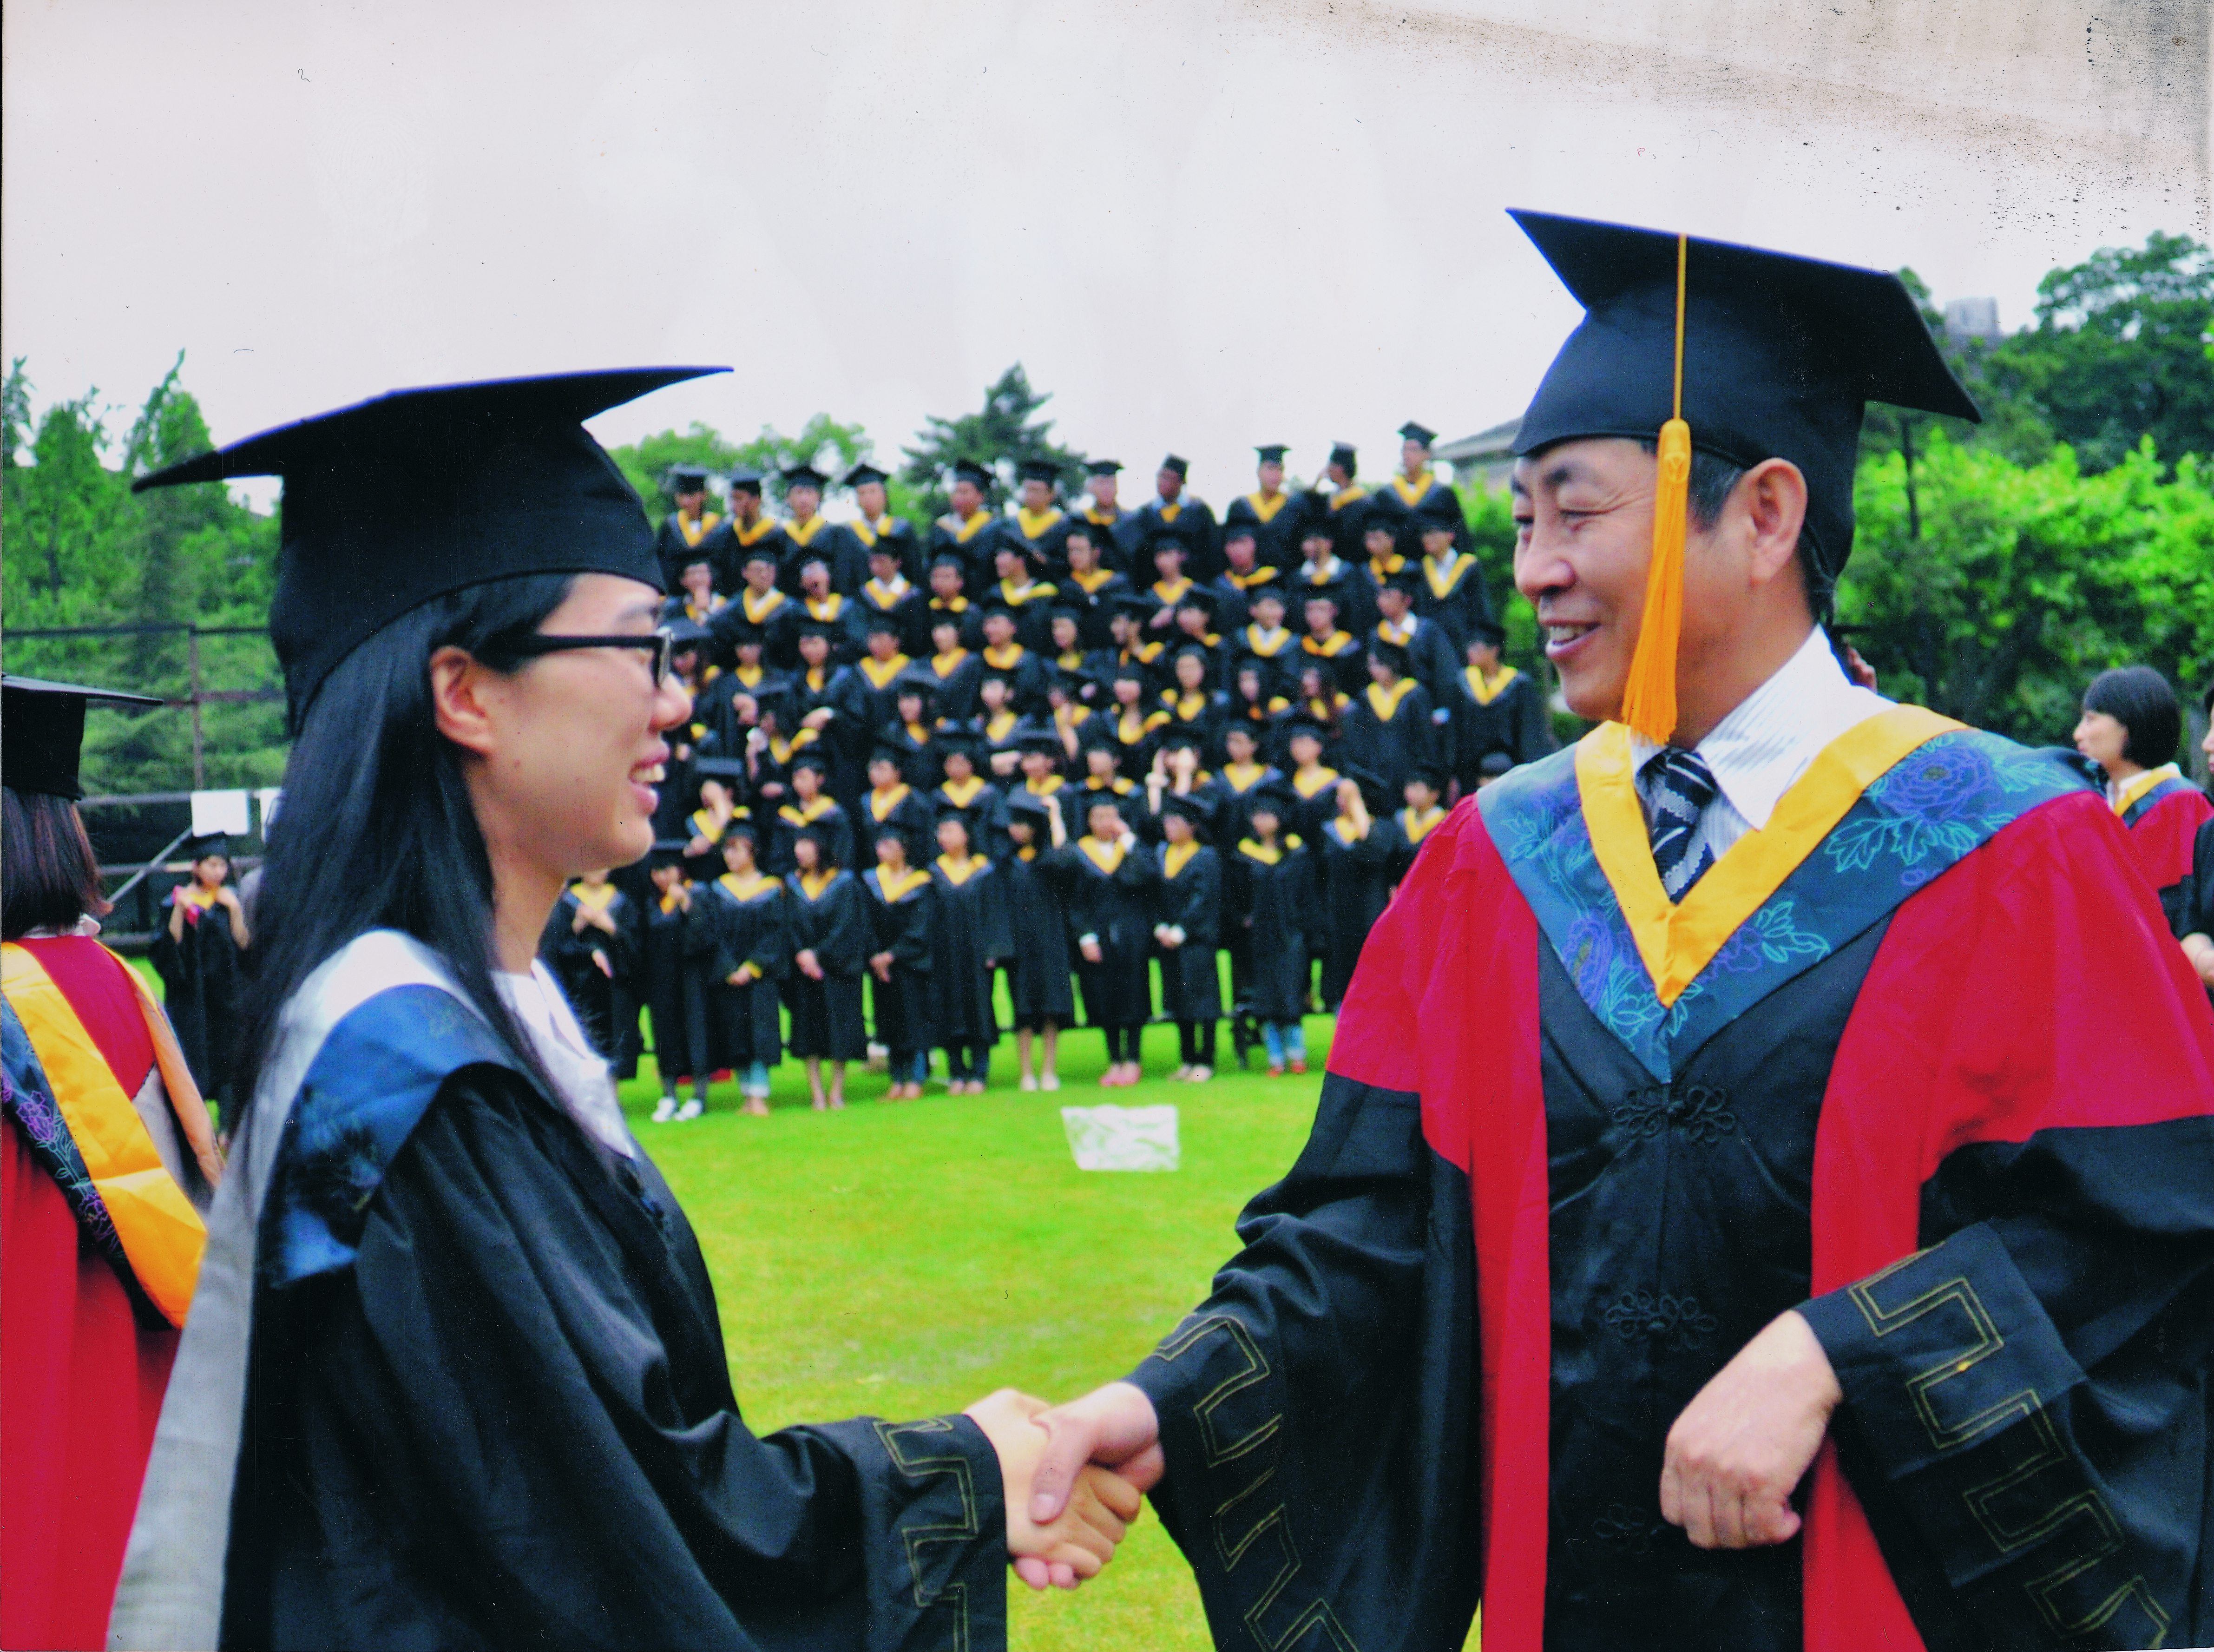 华东理工大学生物工程学院院长张元兴祝贺杨希晨在学业上取得优异的成绩，保研成功。这是叶根土后代中出现的首位研究生。（摄于2013年）_副本.jpg